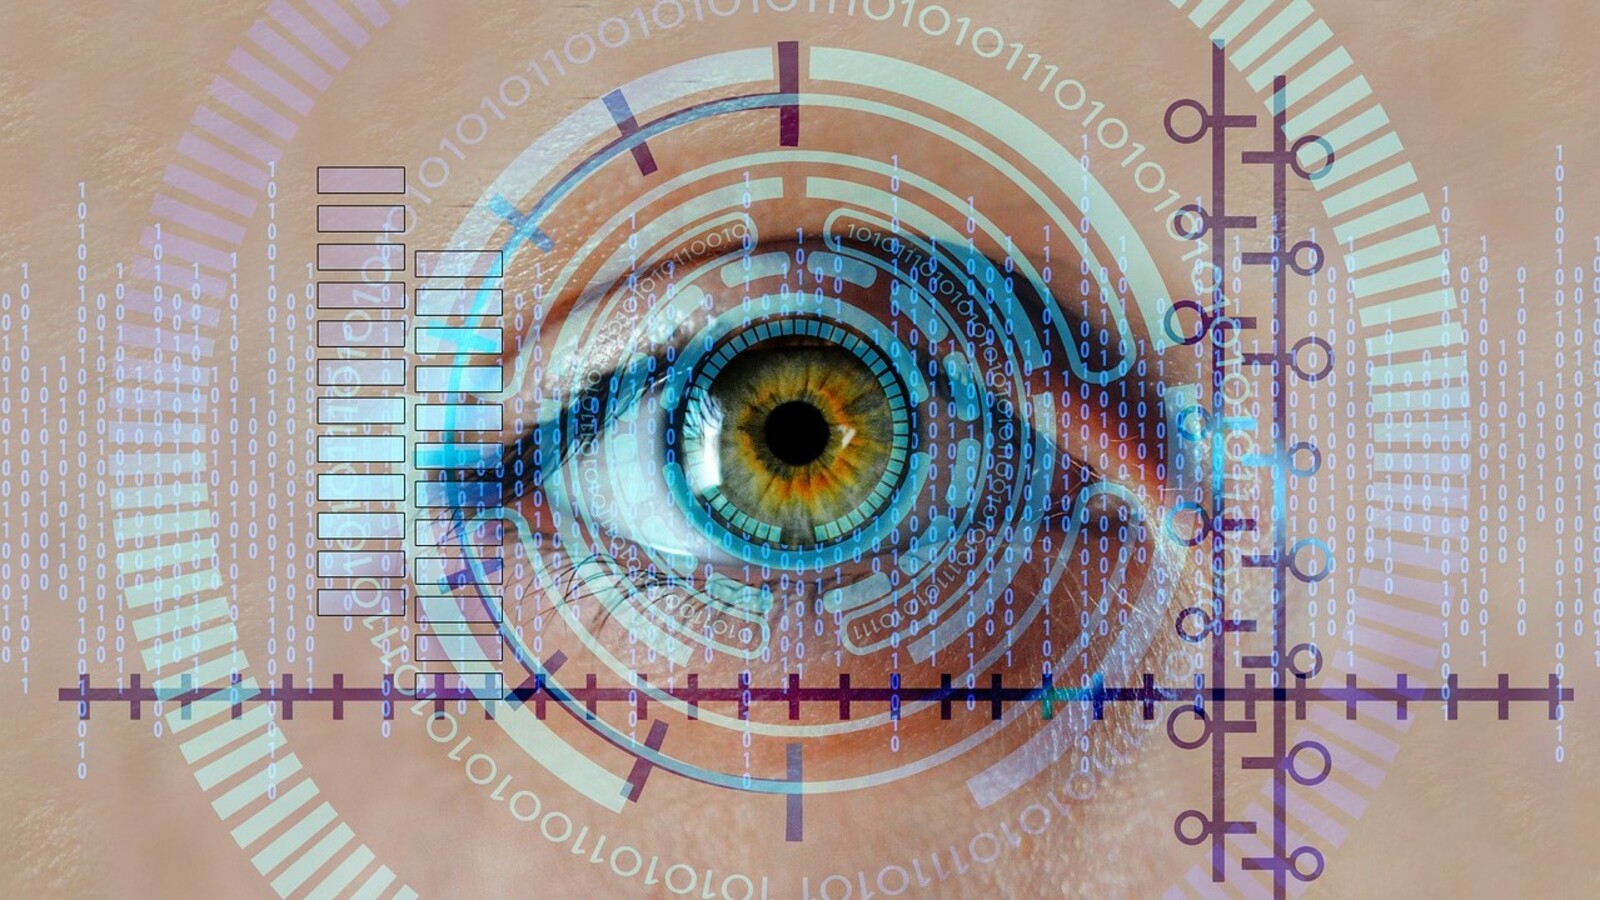 Une initiative citoyenne européenne pour interdire la surveillance biométrique de masse validée par Bruxelles